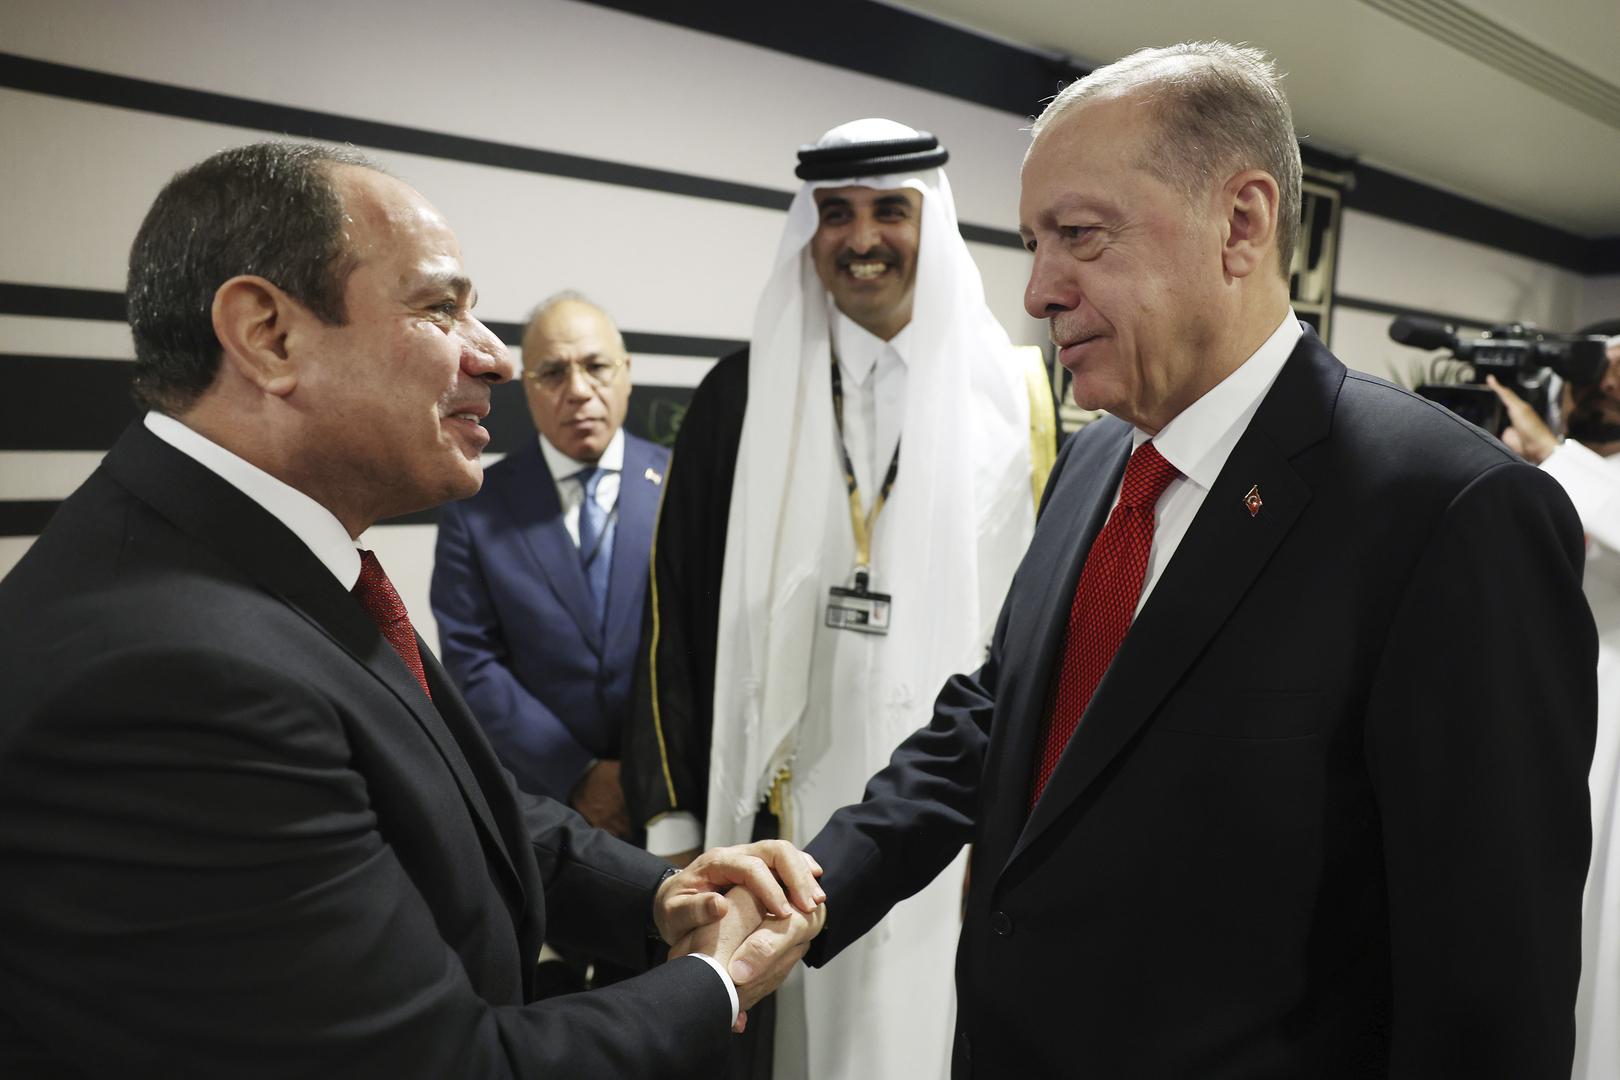 وزير الخارجية التركي: من الممكن تعيين سفراء بشكل متبادل بين أنقرة والقاهرة في الأشهر القادمة